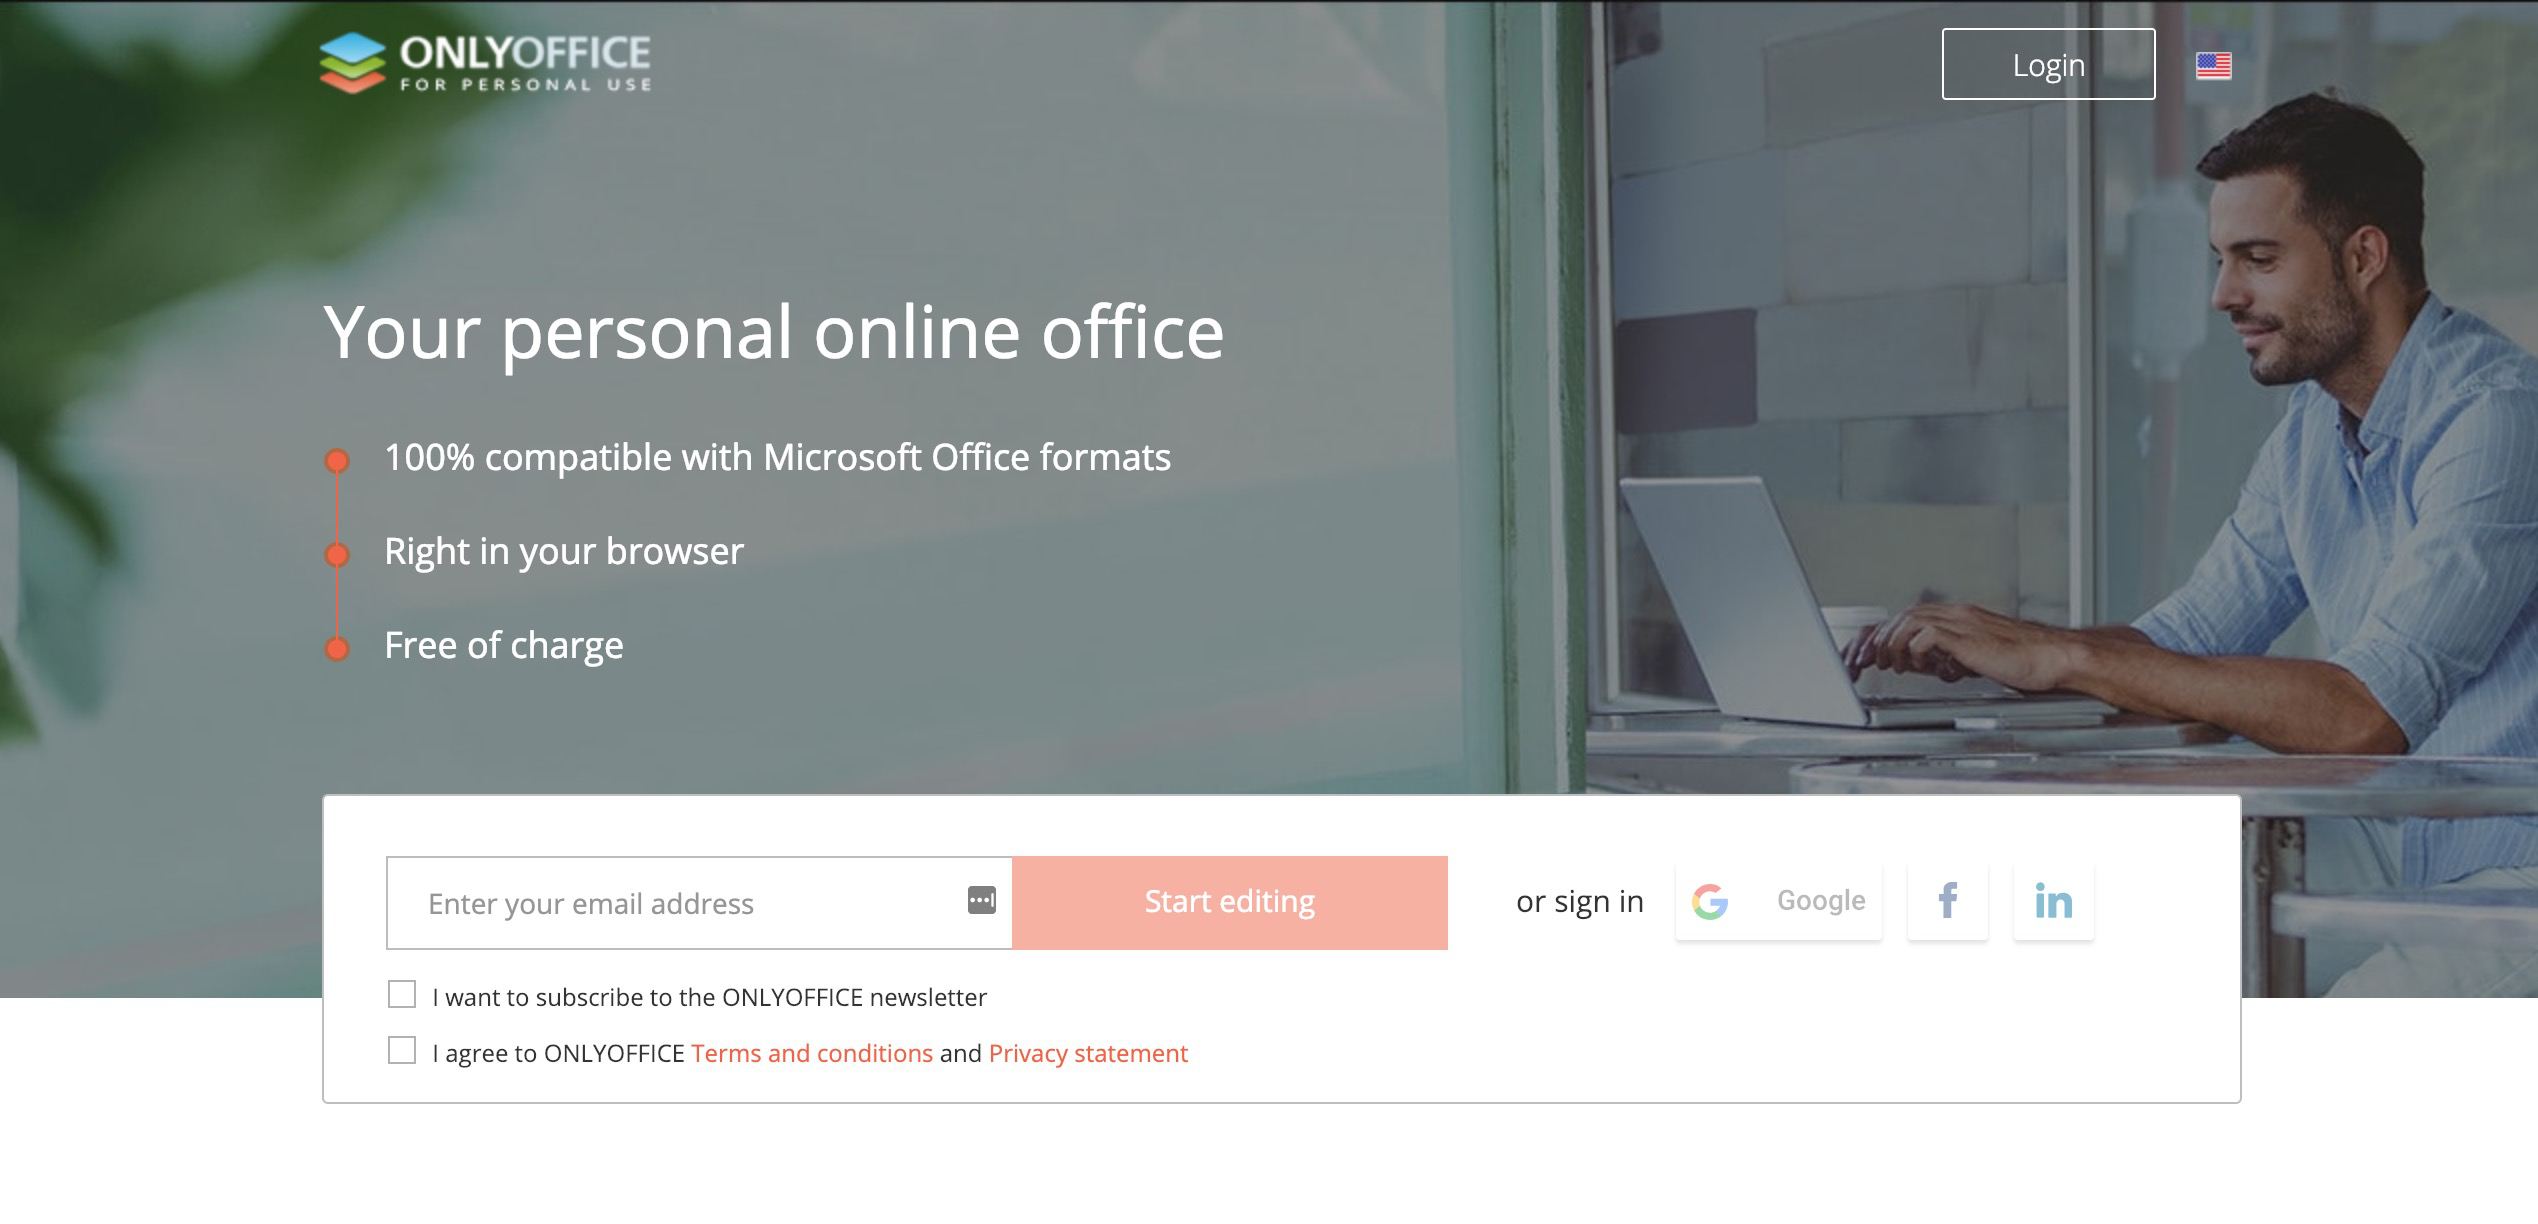 Webbplats med gratis Microsoft Office-alternativ ENDAST.